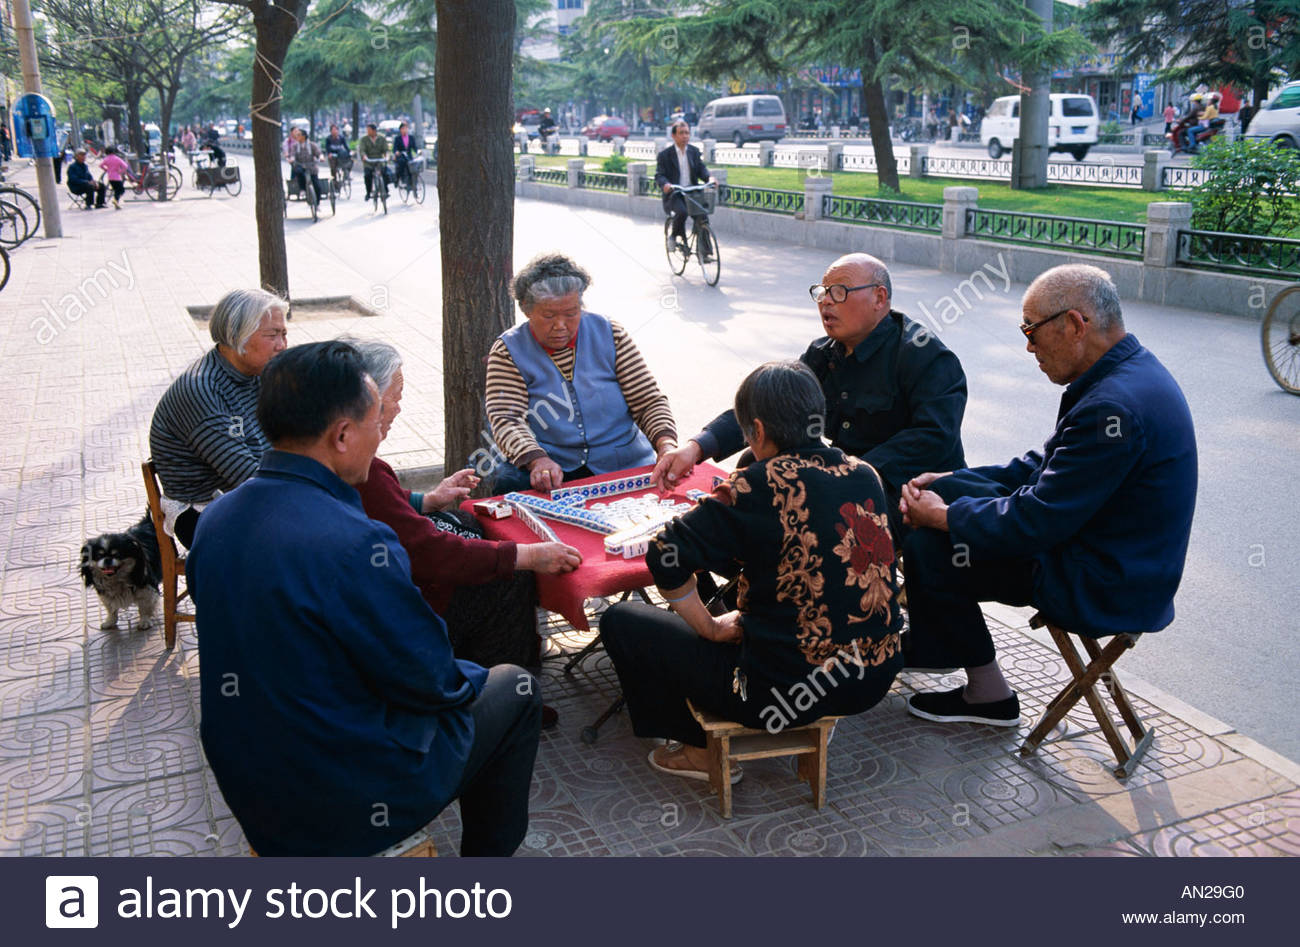 street-scene-elderly-men-women-playing-mahjong-gambling-game-beijing-AN29G0.jpg